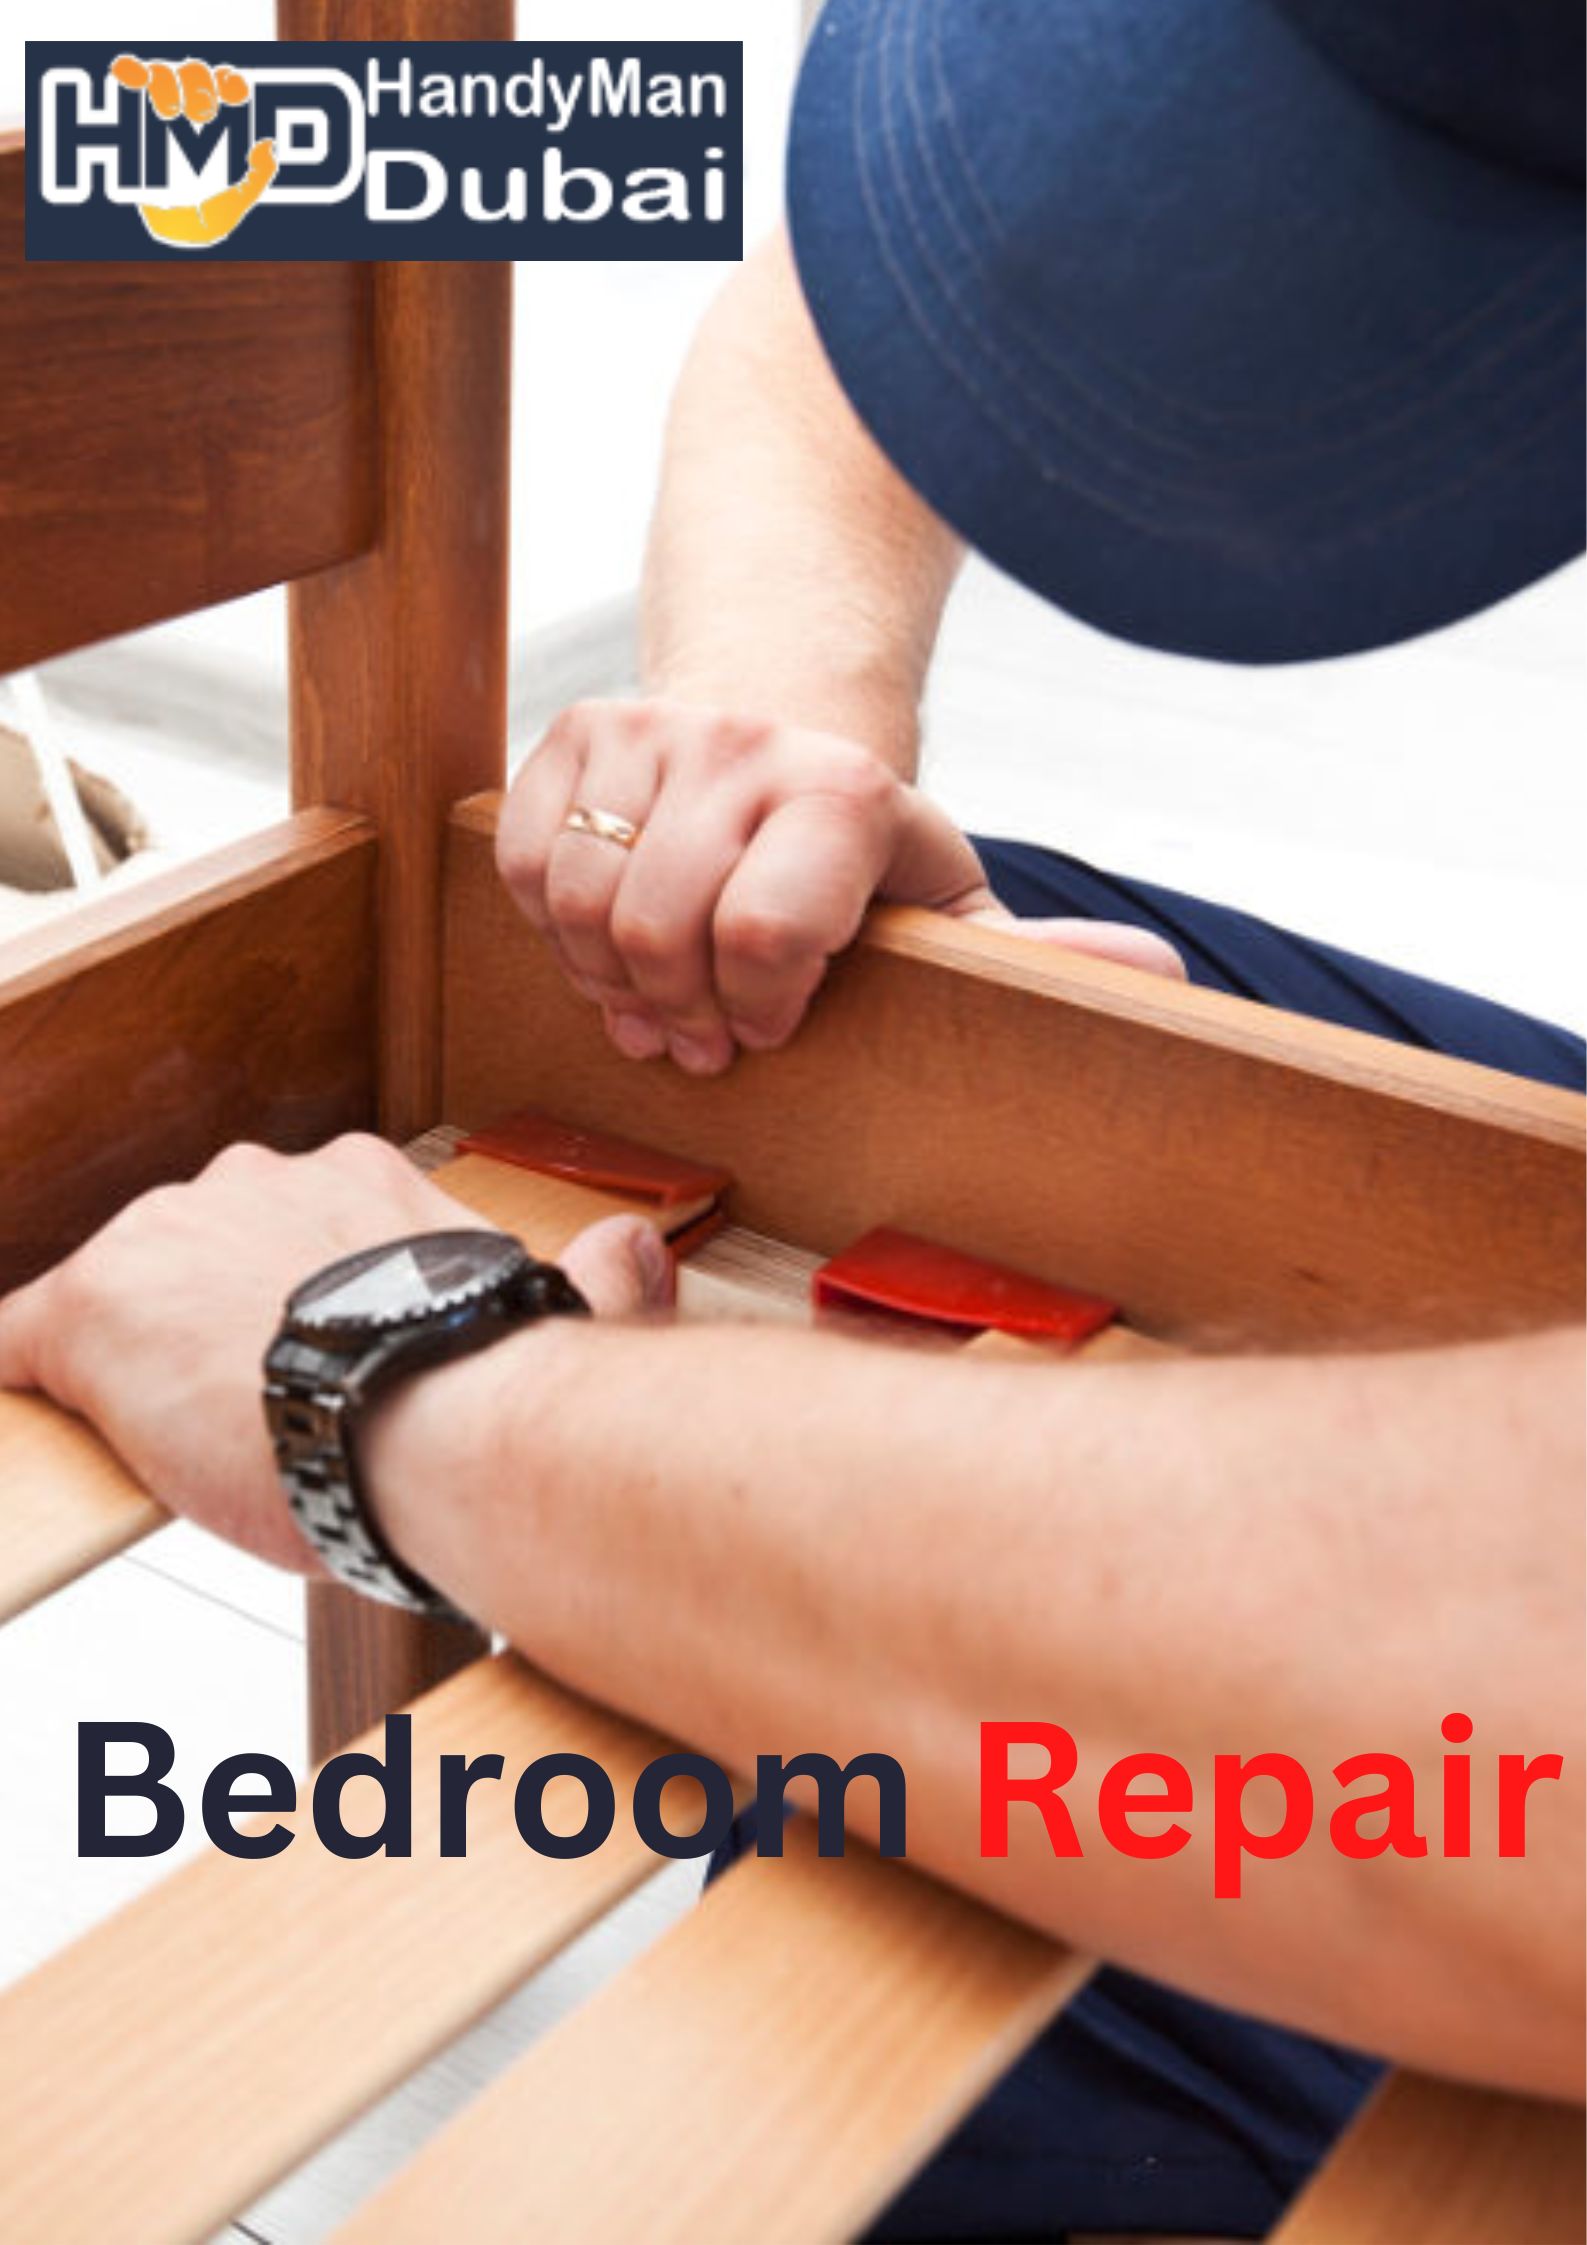 Why Do You Need Handyman Dubai For Your Home Renovation?